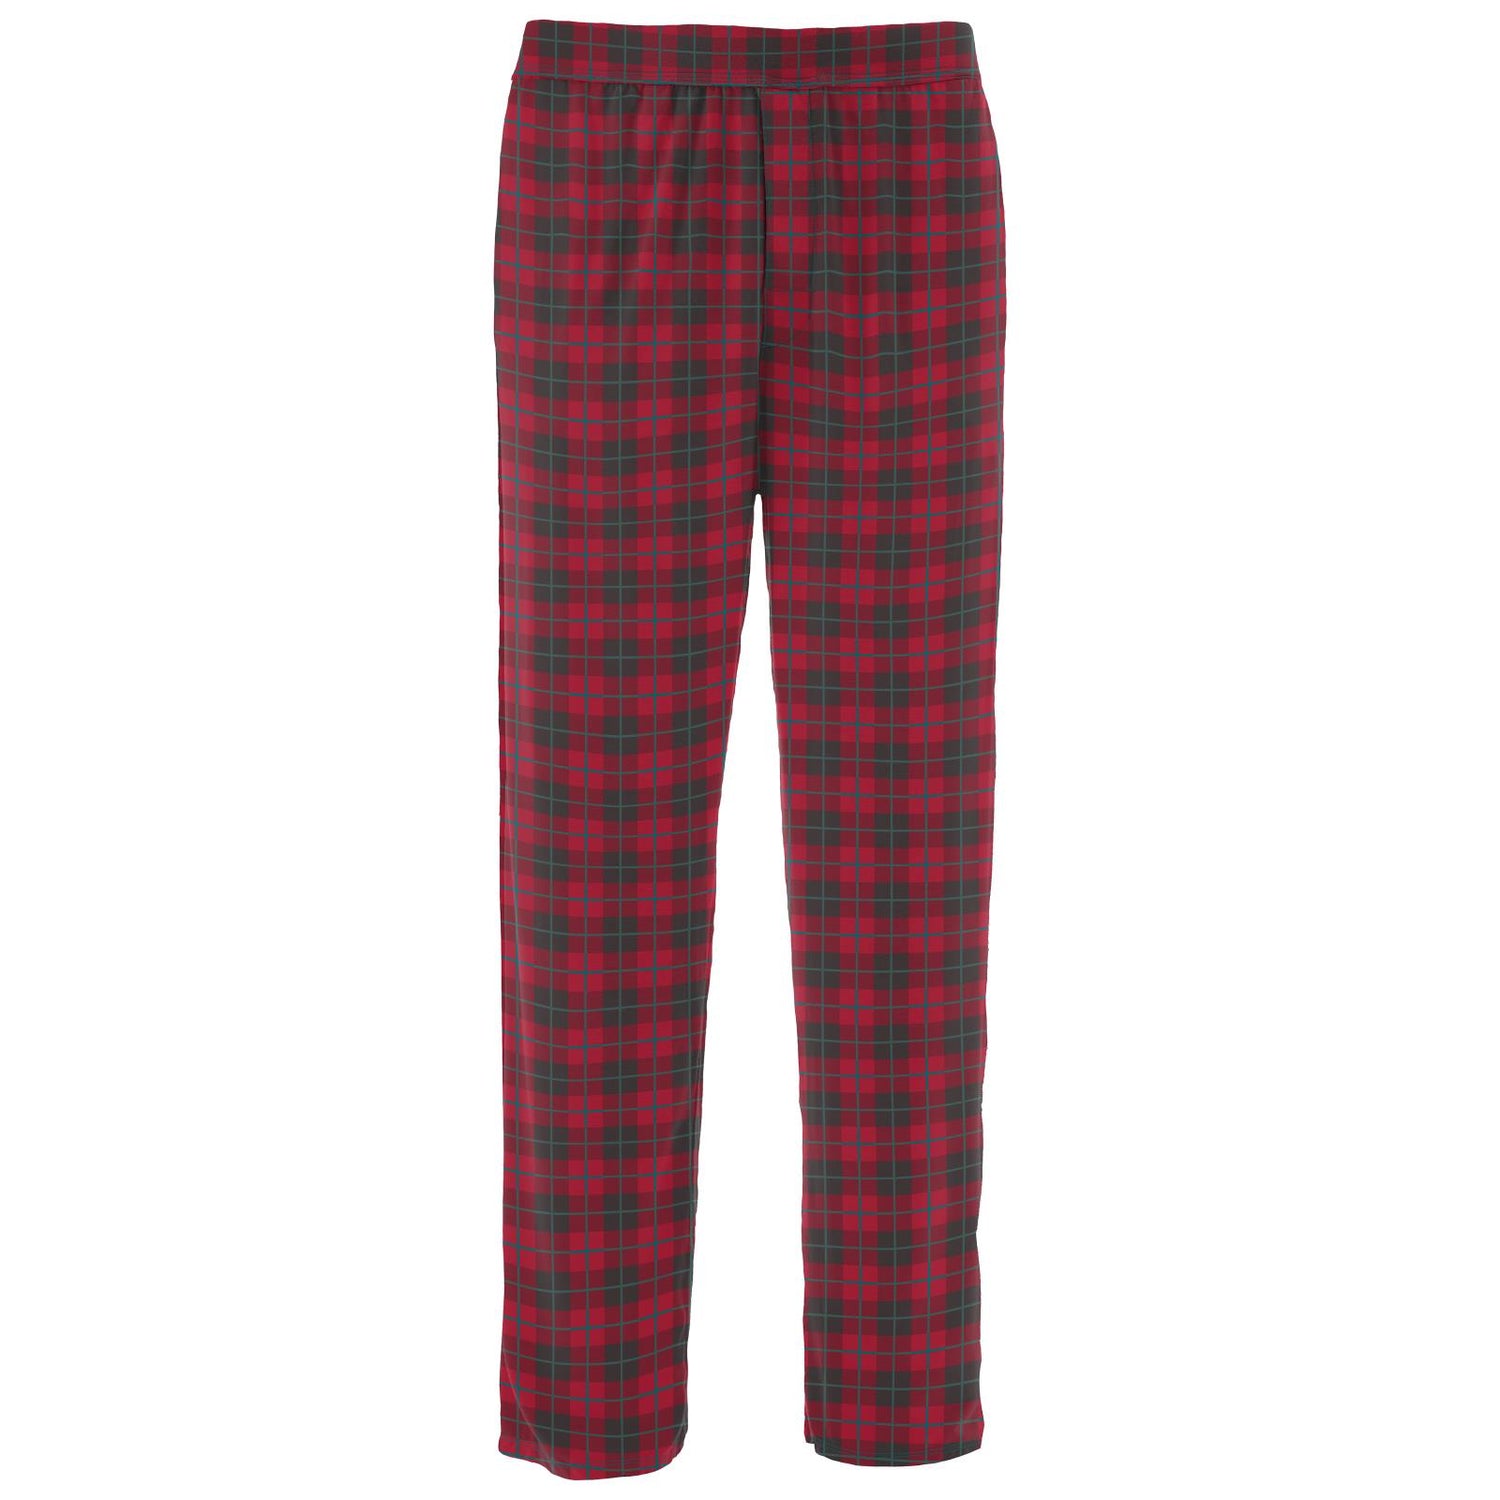 Men's Print Pajama Pants in Anniversary Plaid